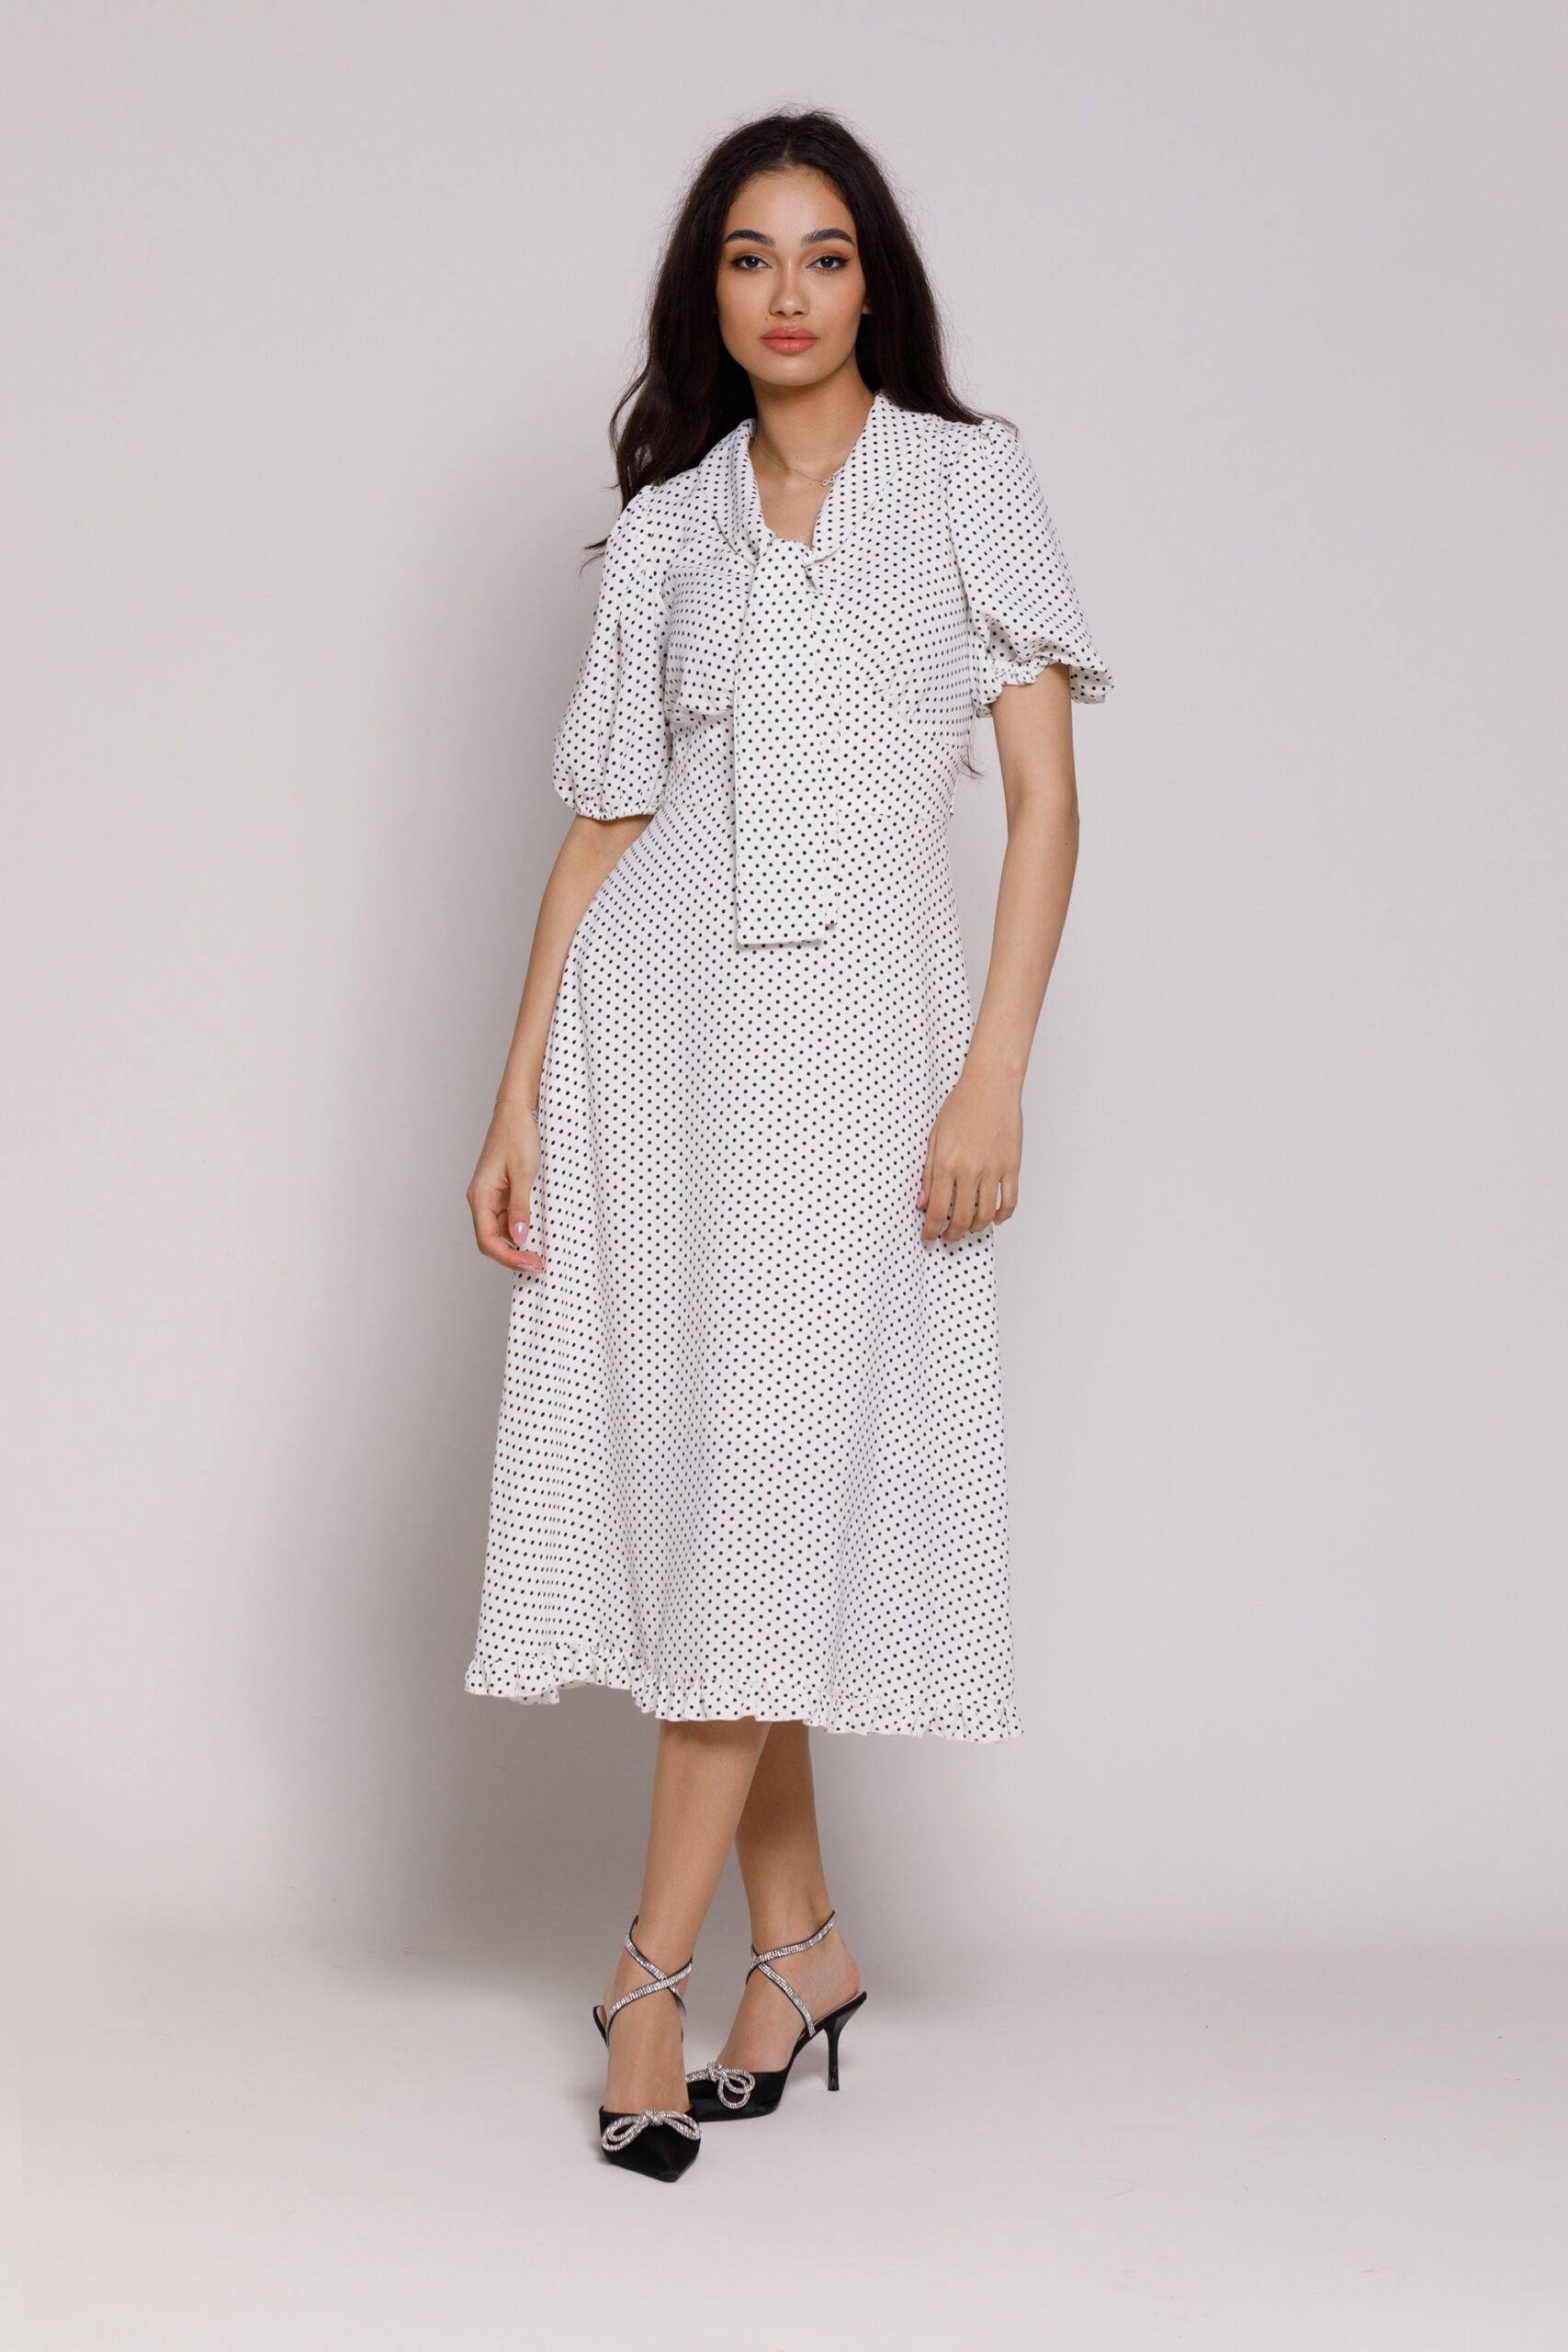 NOLA casual white viscose dress with black dots. Natural fabrics, original design, handmade embroidery